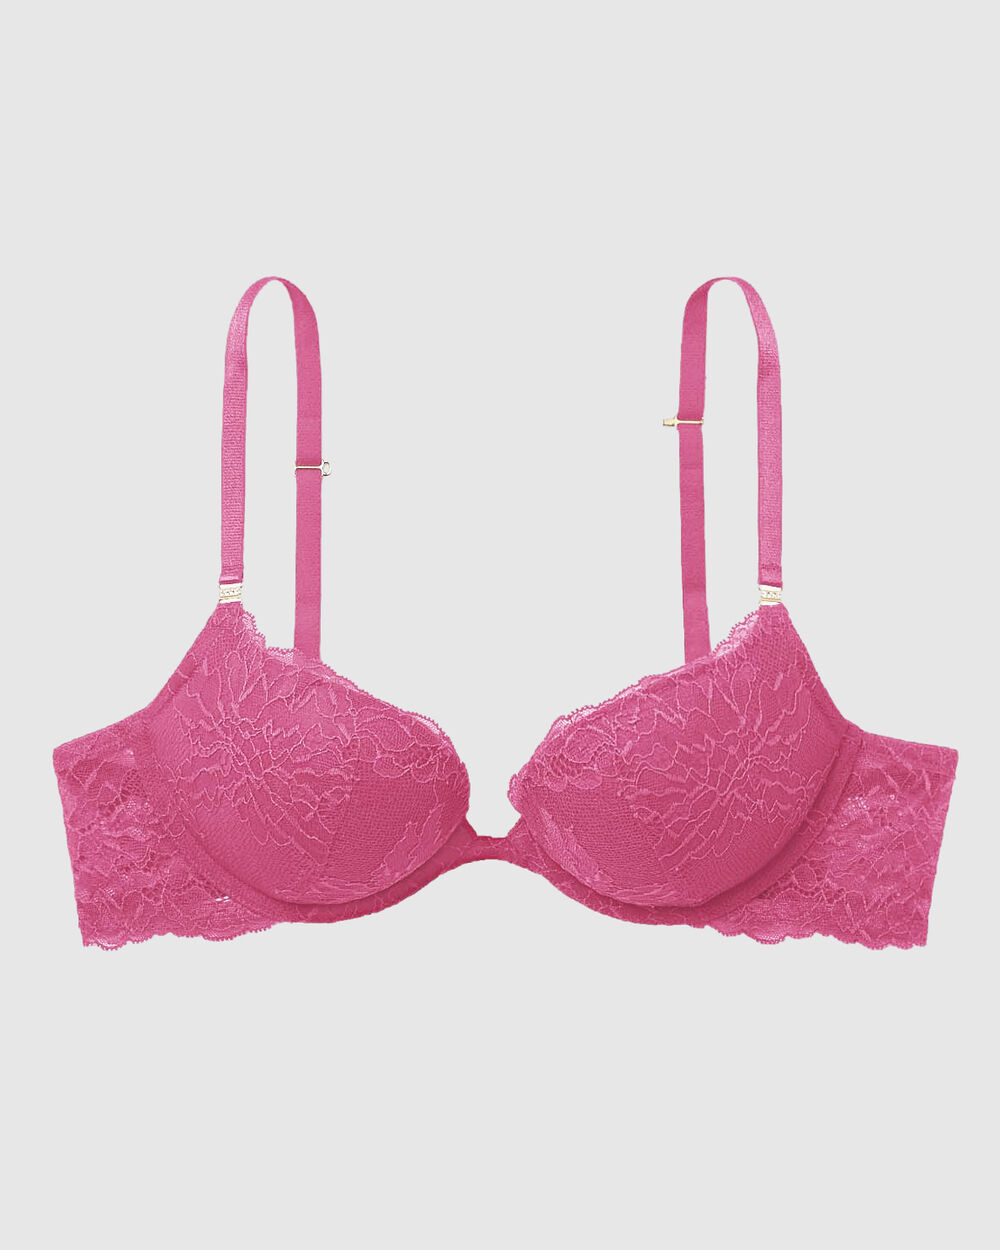 Victoria's Secret Pink Bra T-Shirt Push Up Size 34D